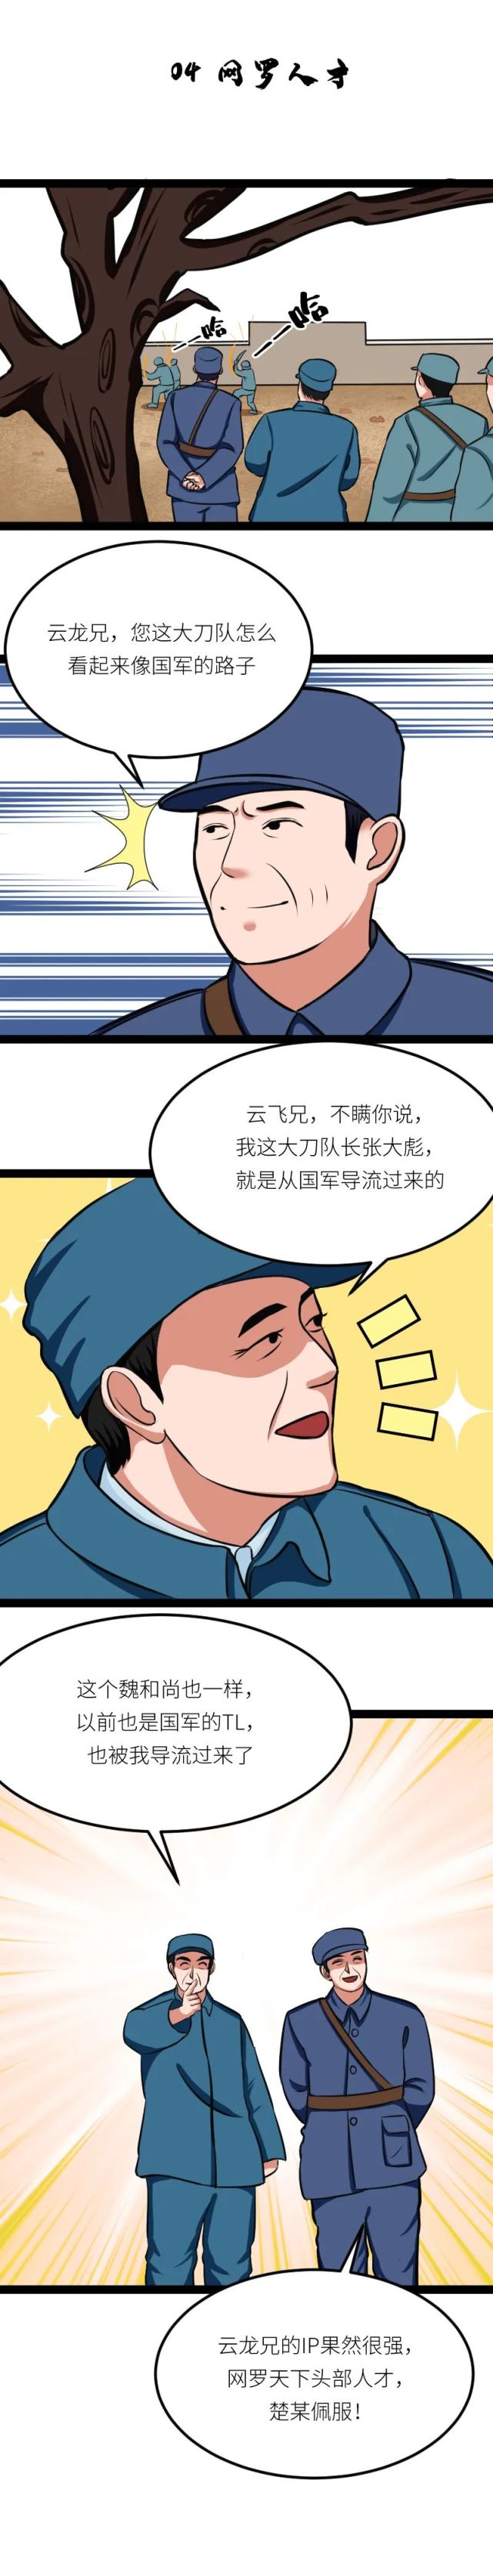 漫画 李云龙"玩互联网,憋住请别笑!